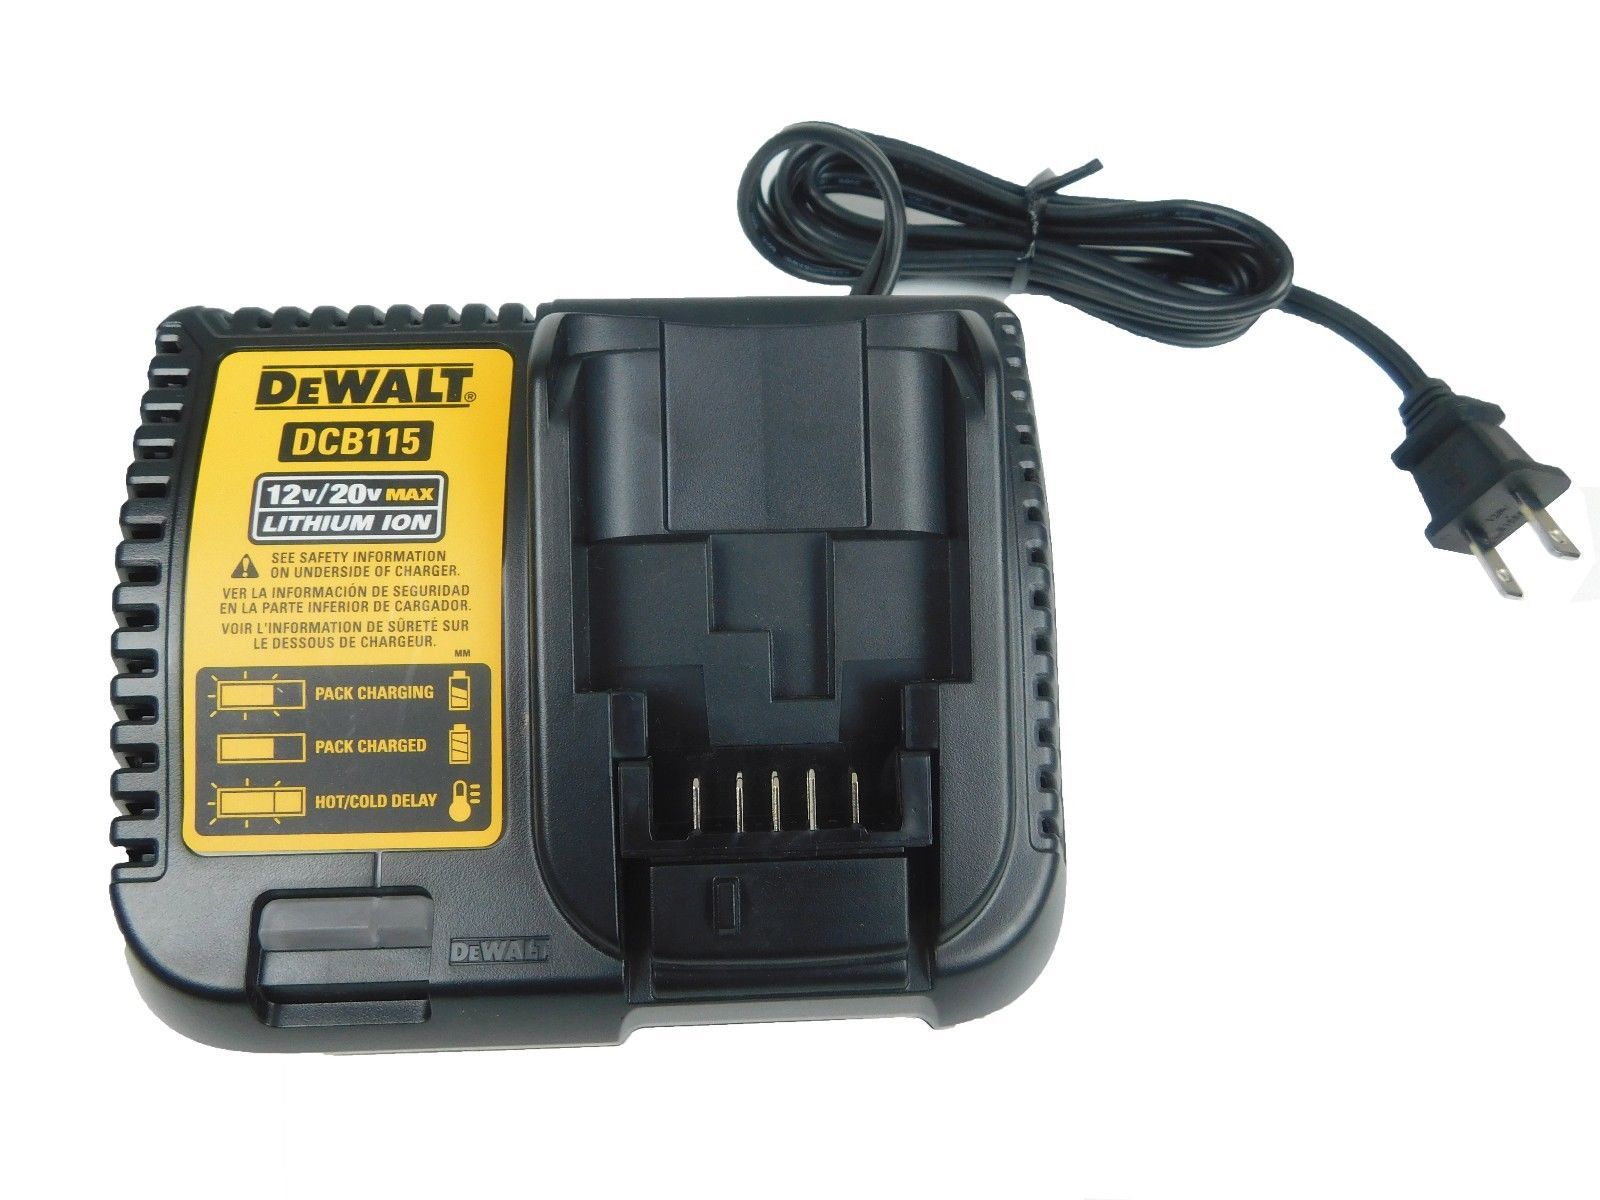 DeWalt-DCB115-MAX-Lithium-Ion-Battery-Charger-12V-20V-image-4